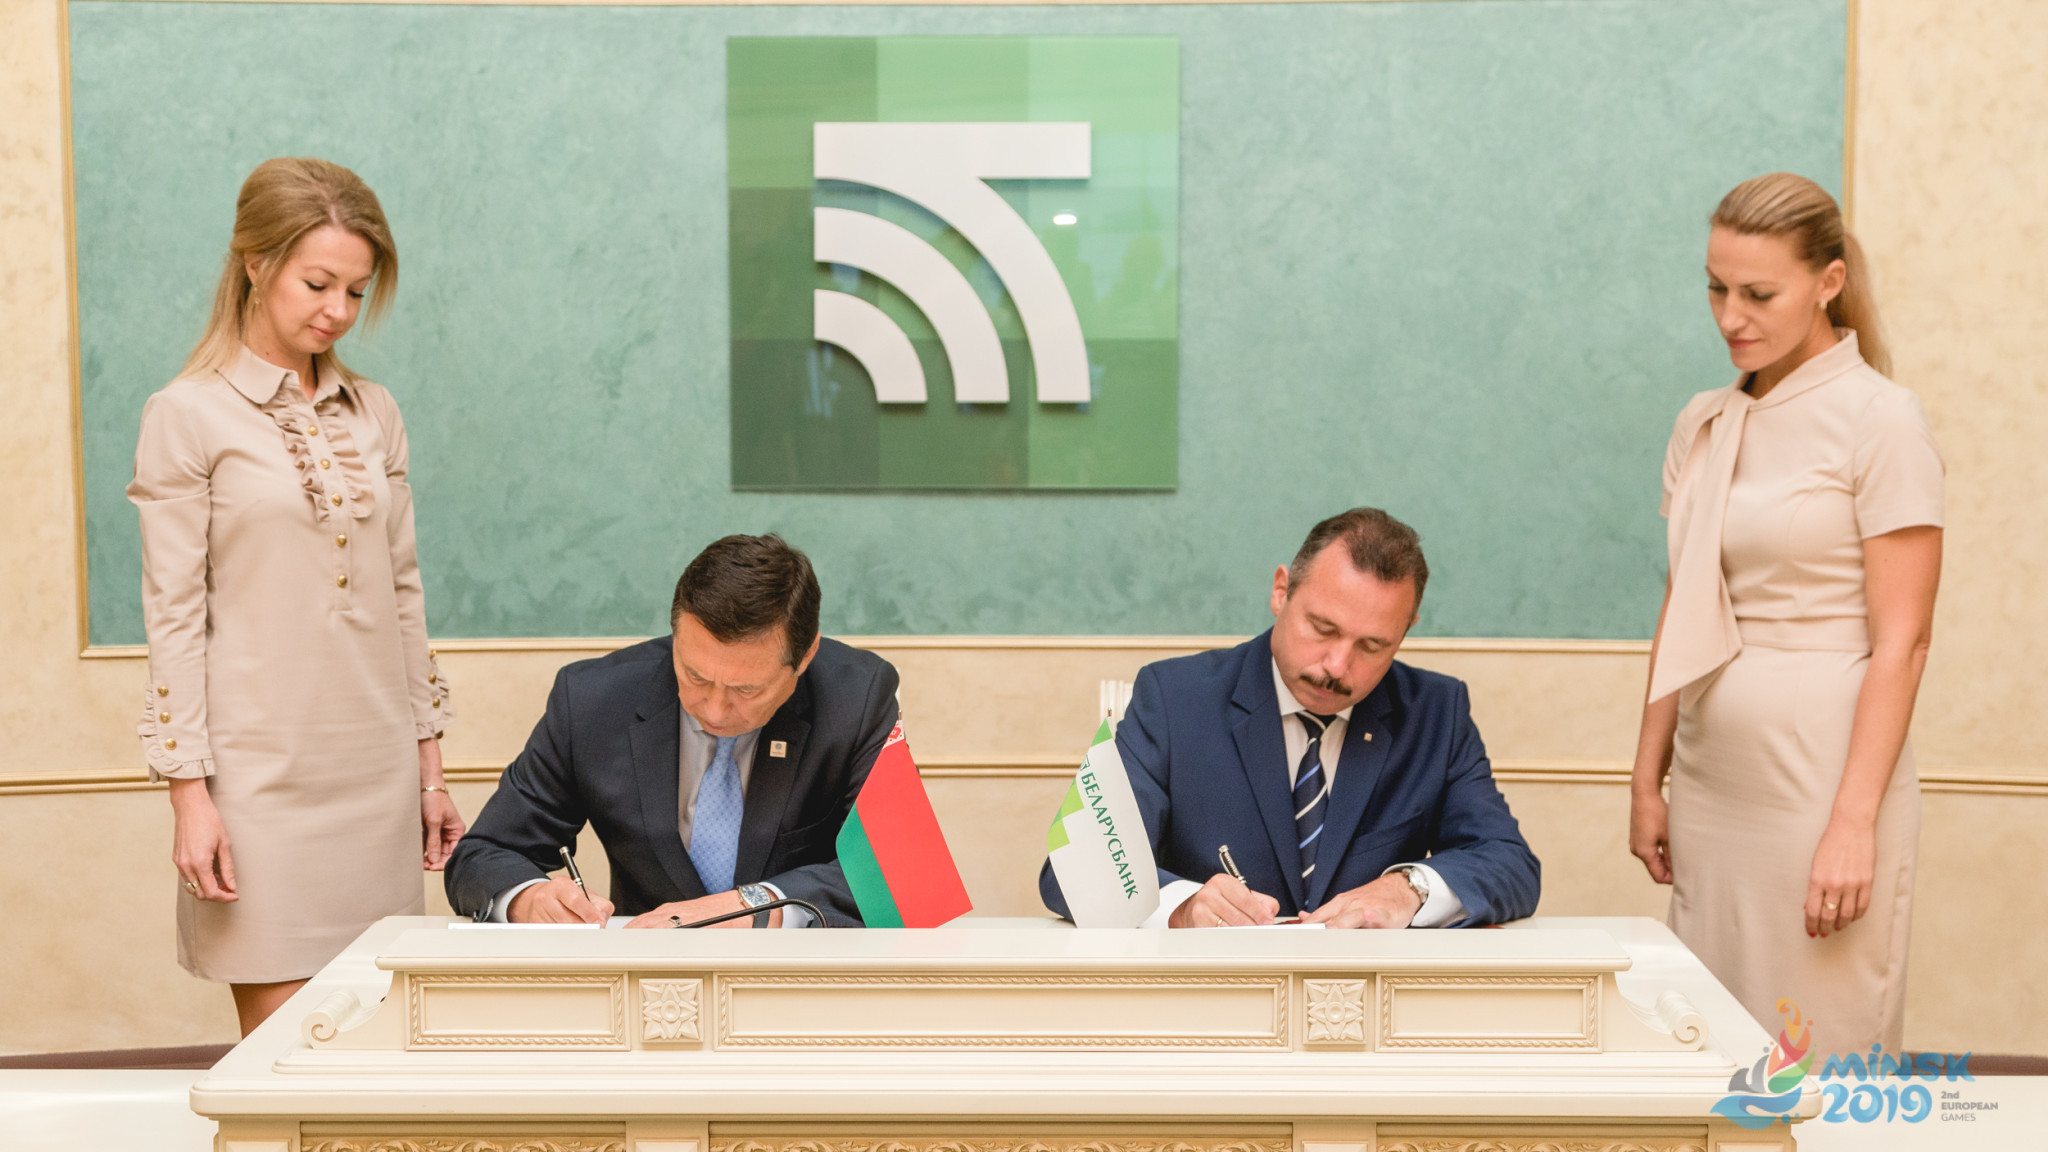 Belarusbank is no stranger to signing sporting deals ©Minsk 2019